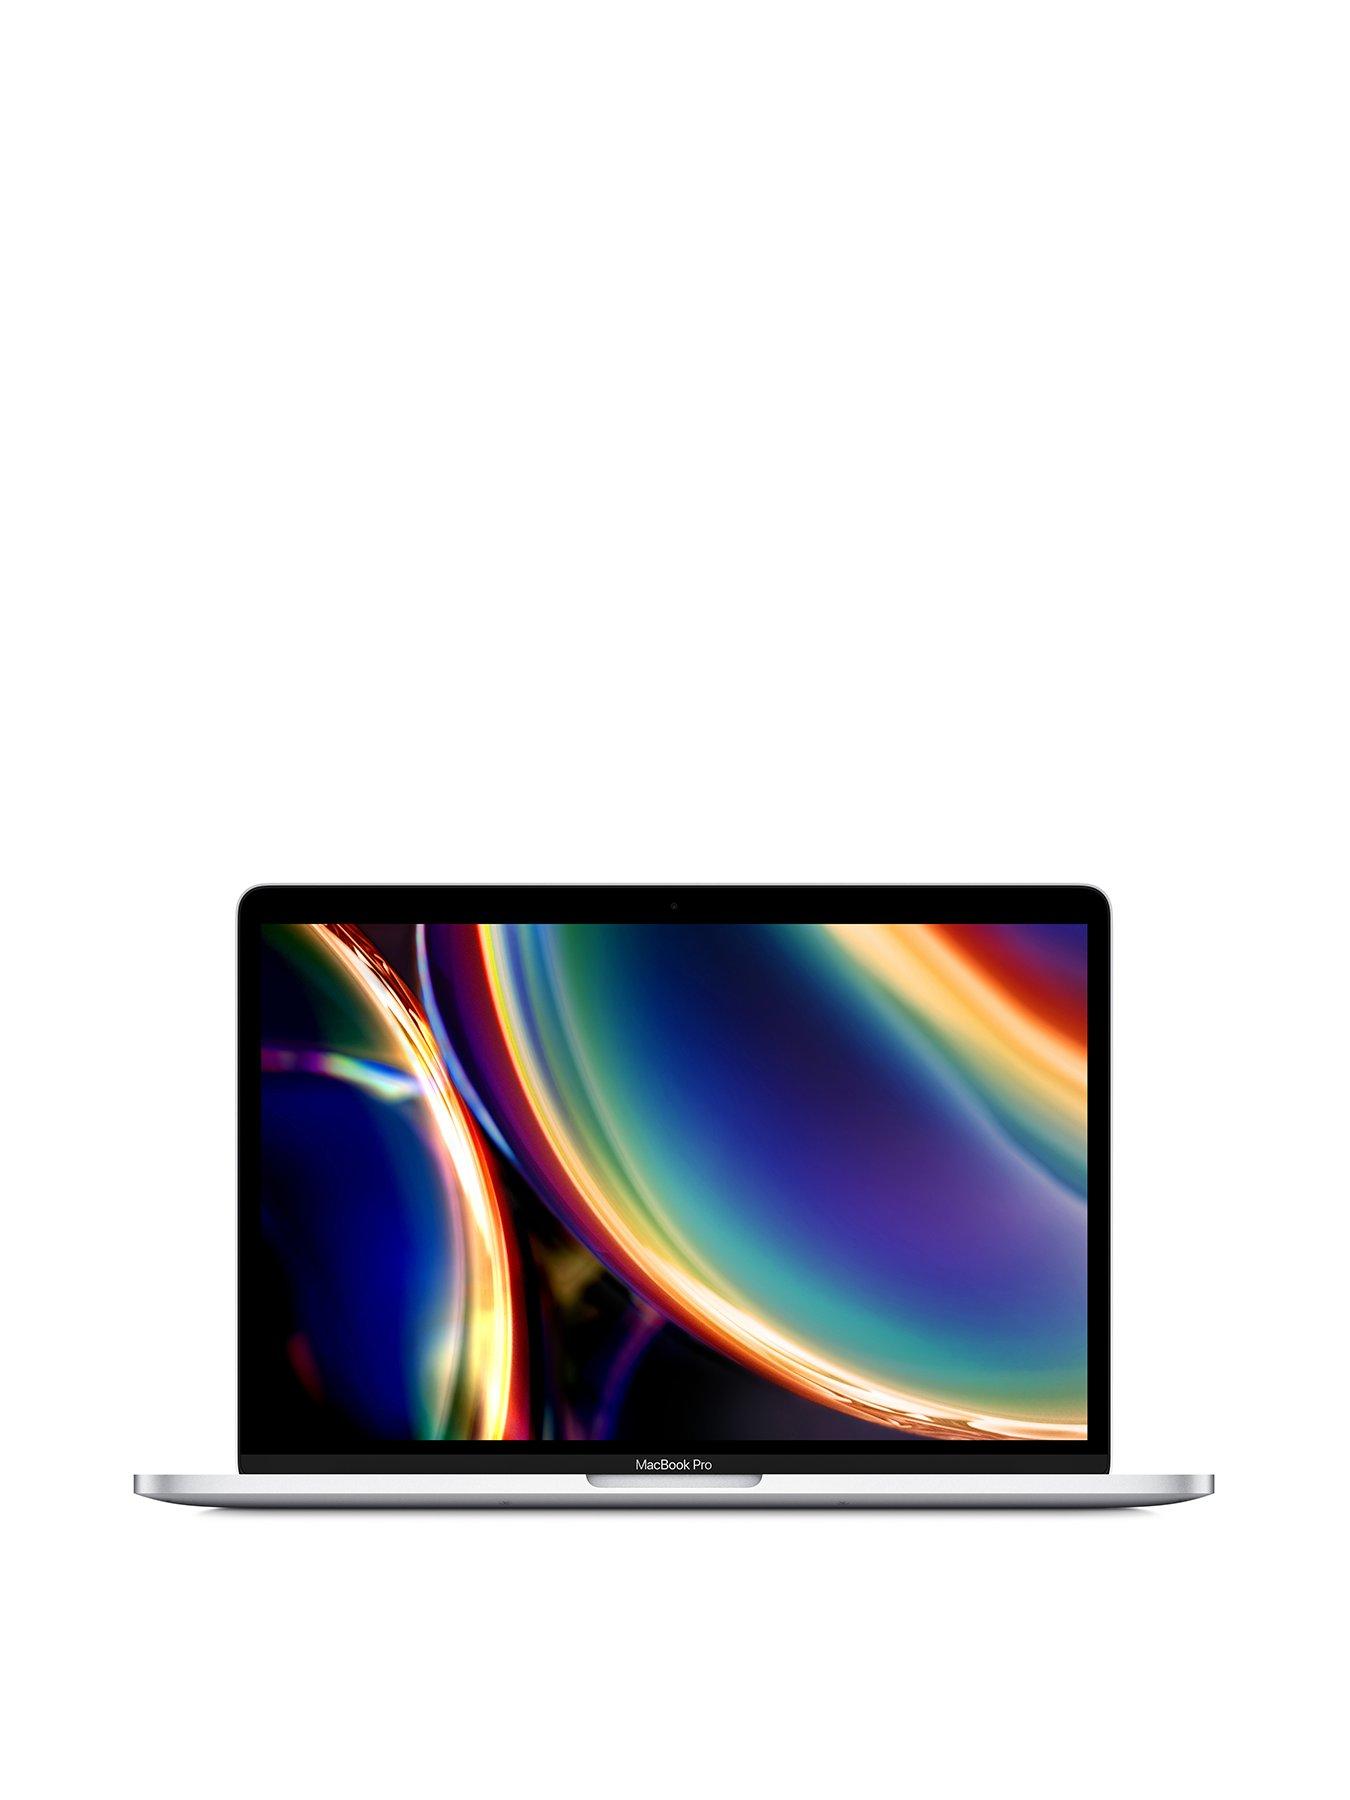 apple mac mini quad core i7 2.0ghz 8gb 1tbv setup